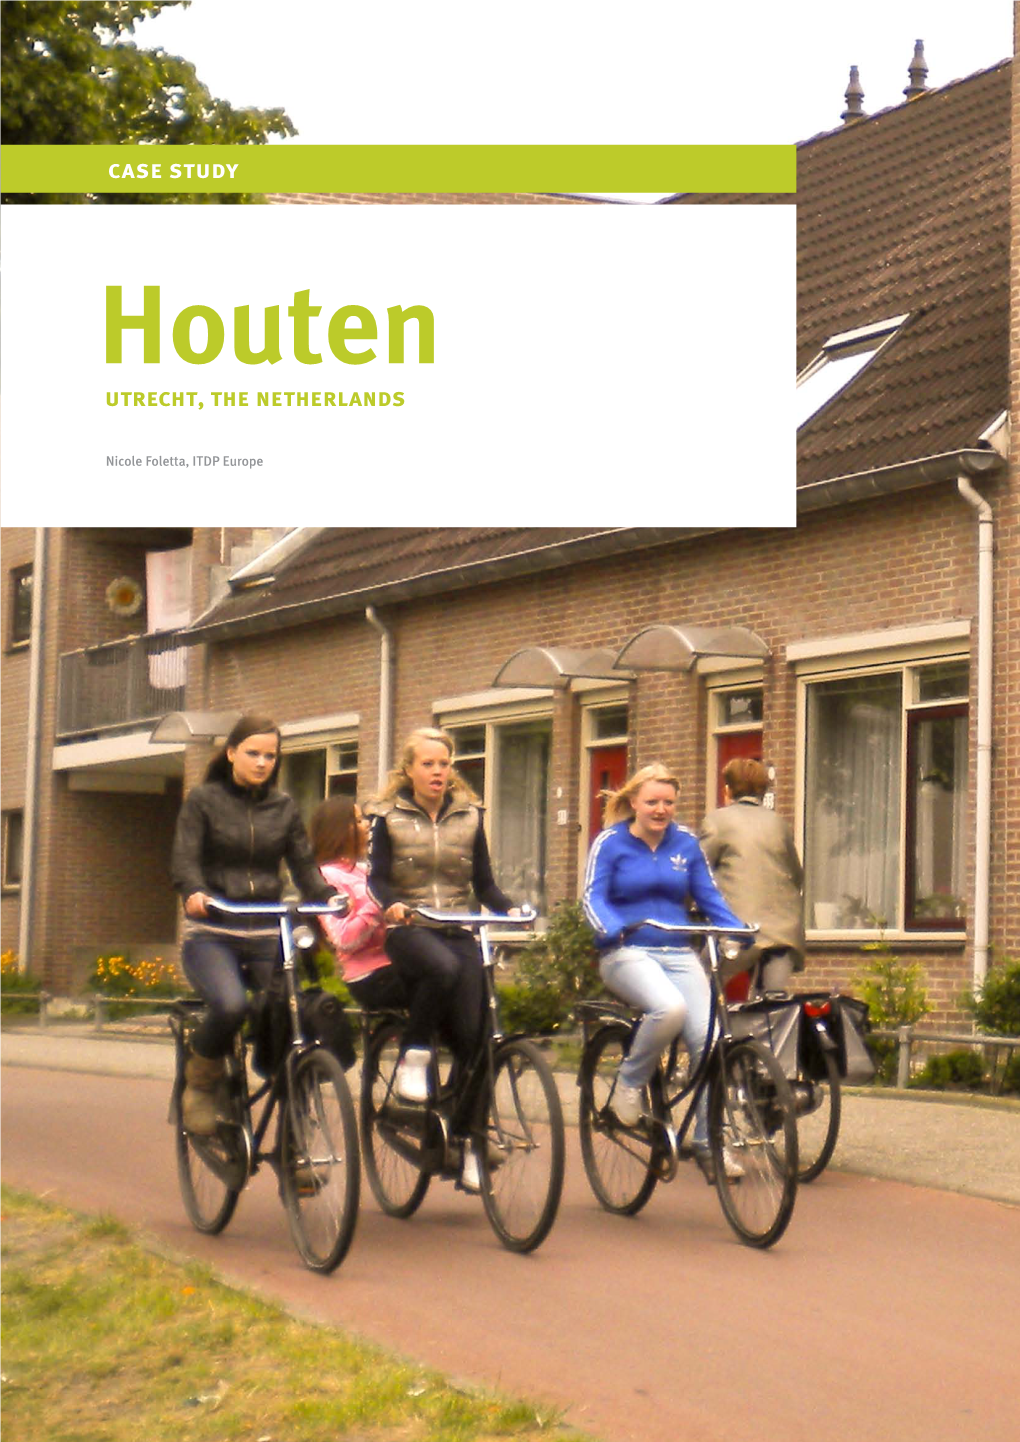 Houten Utrecht, the Netherlands